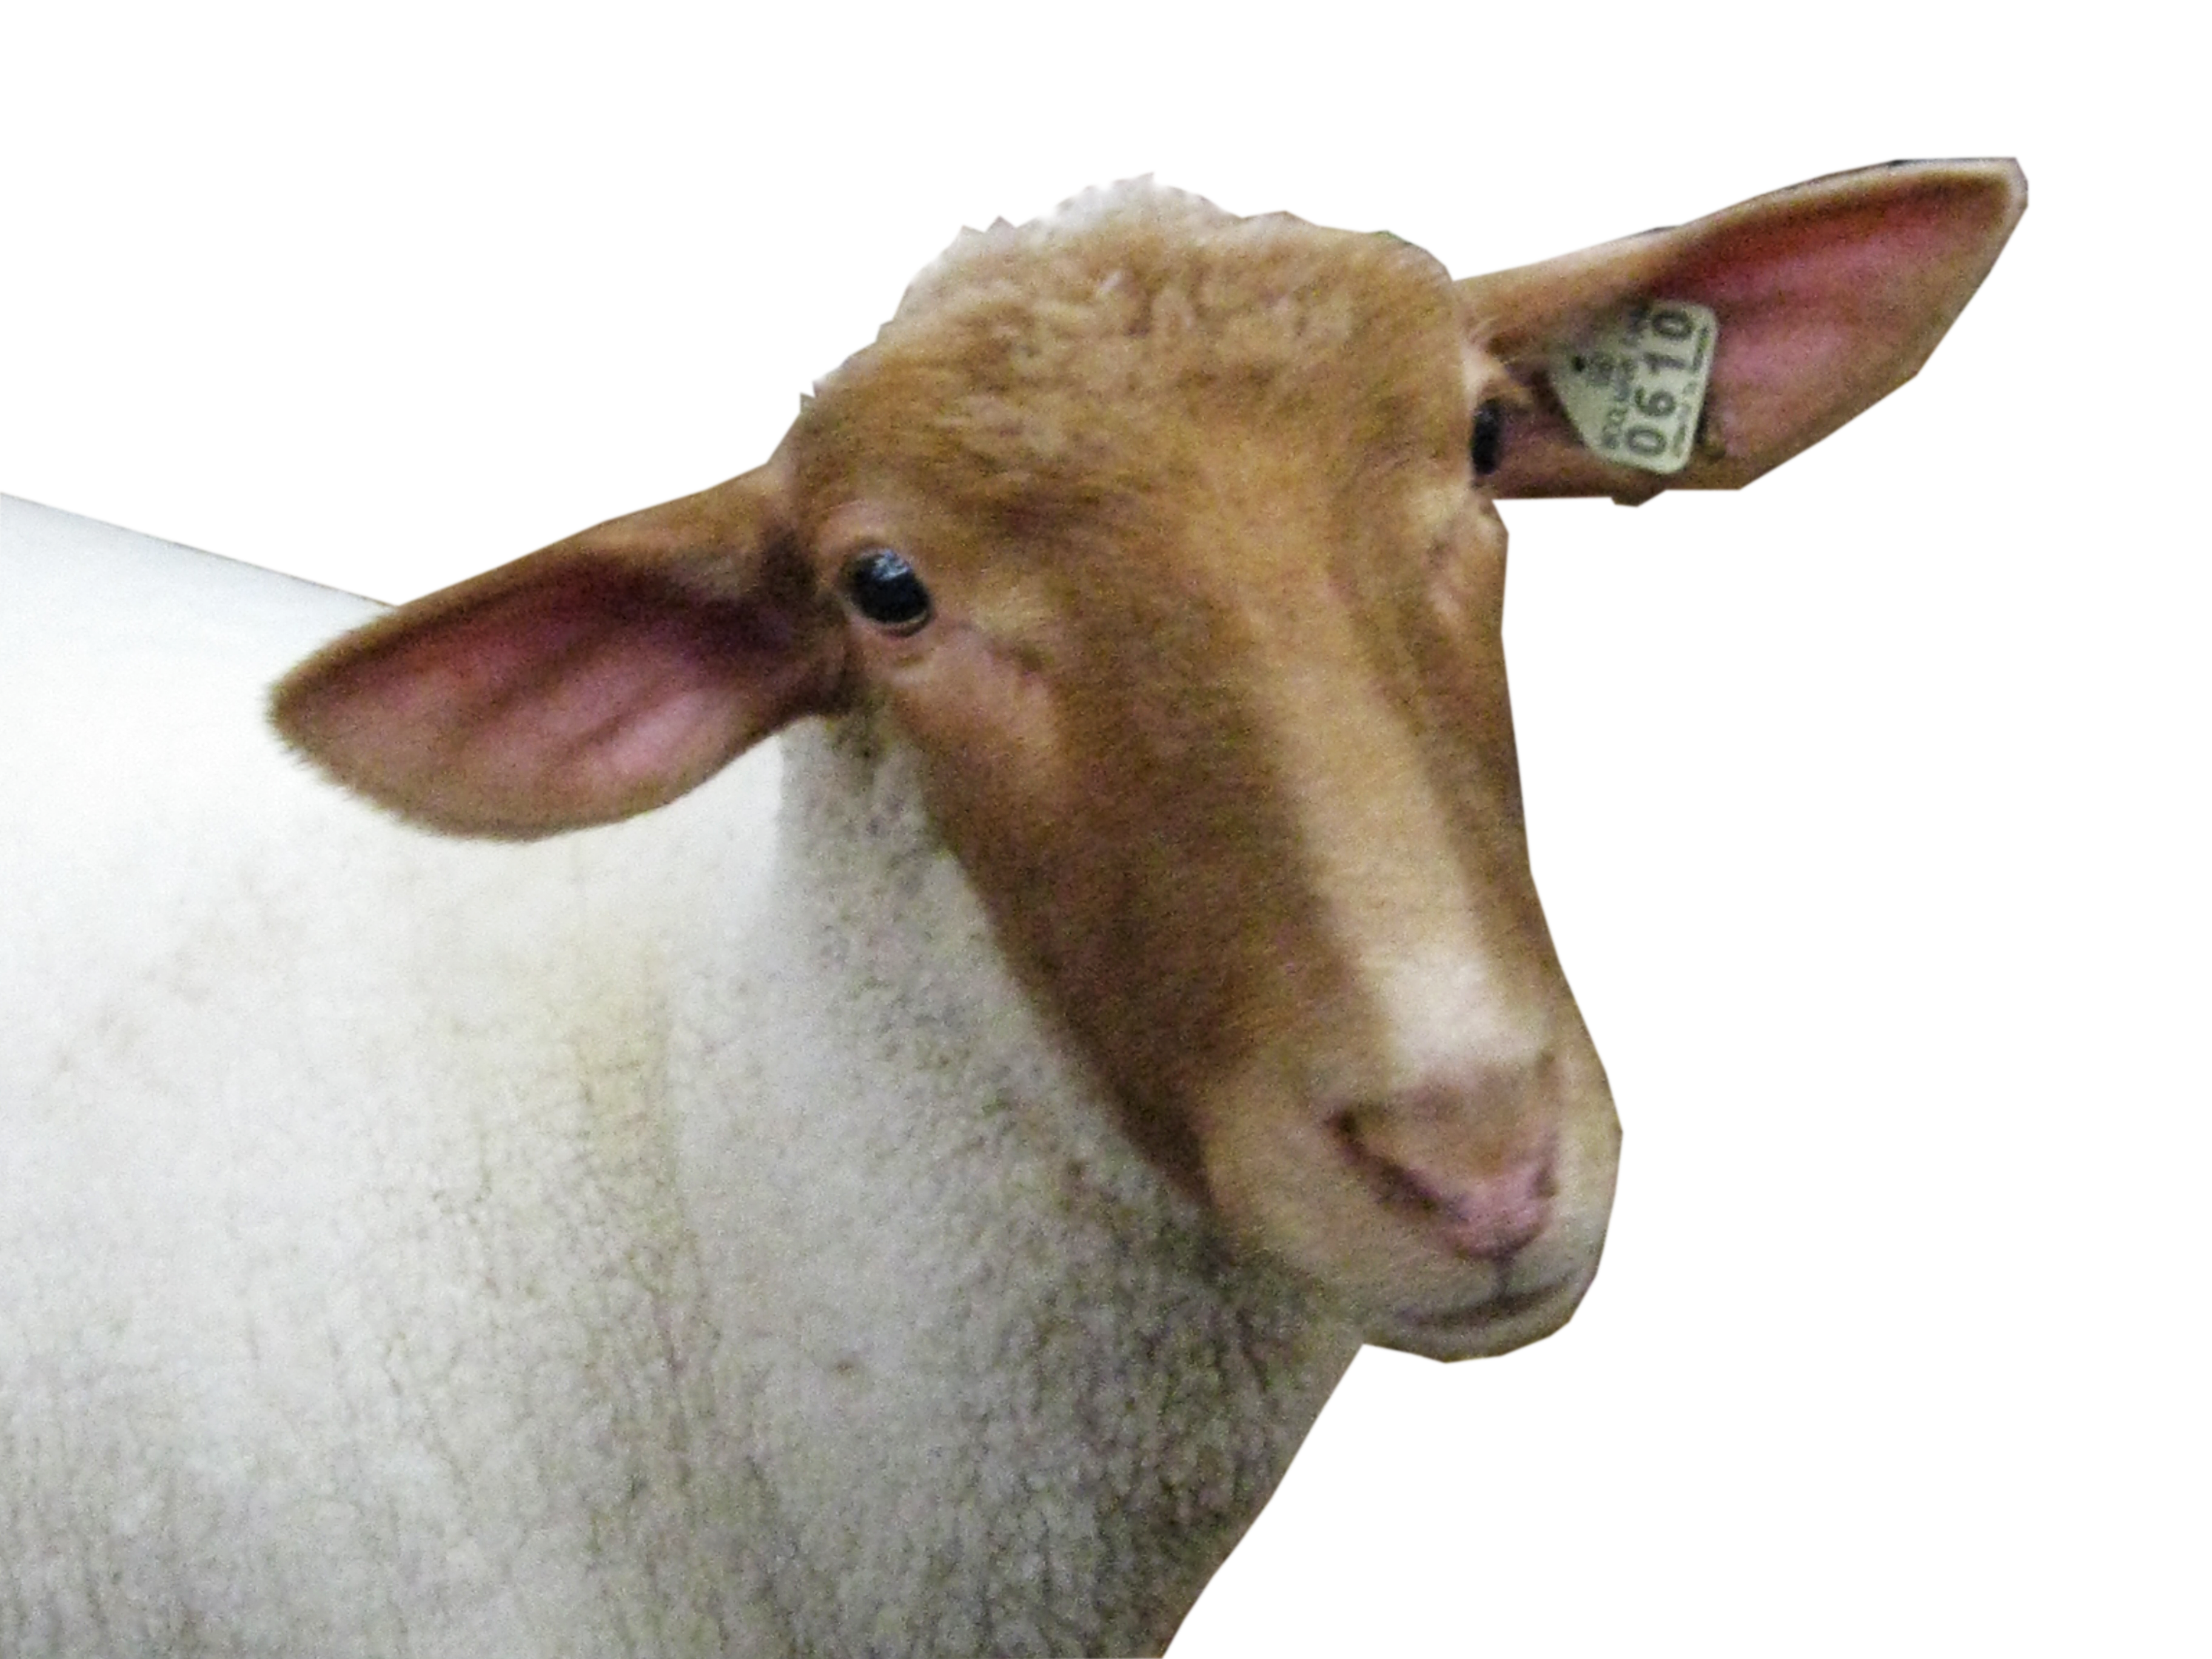 Cabeça de ovelha